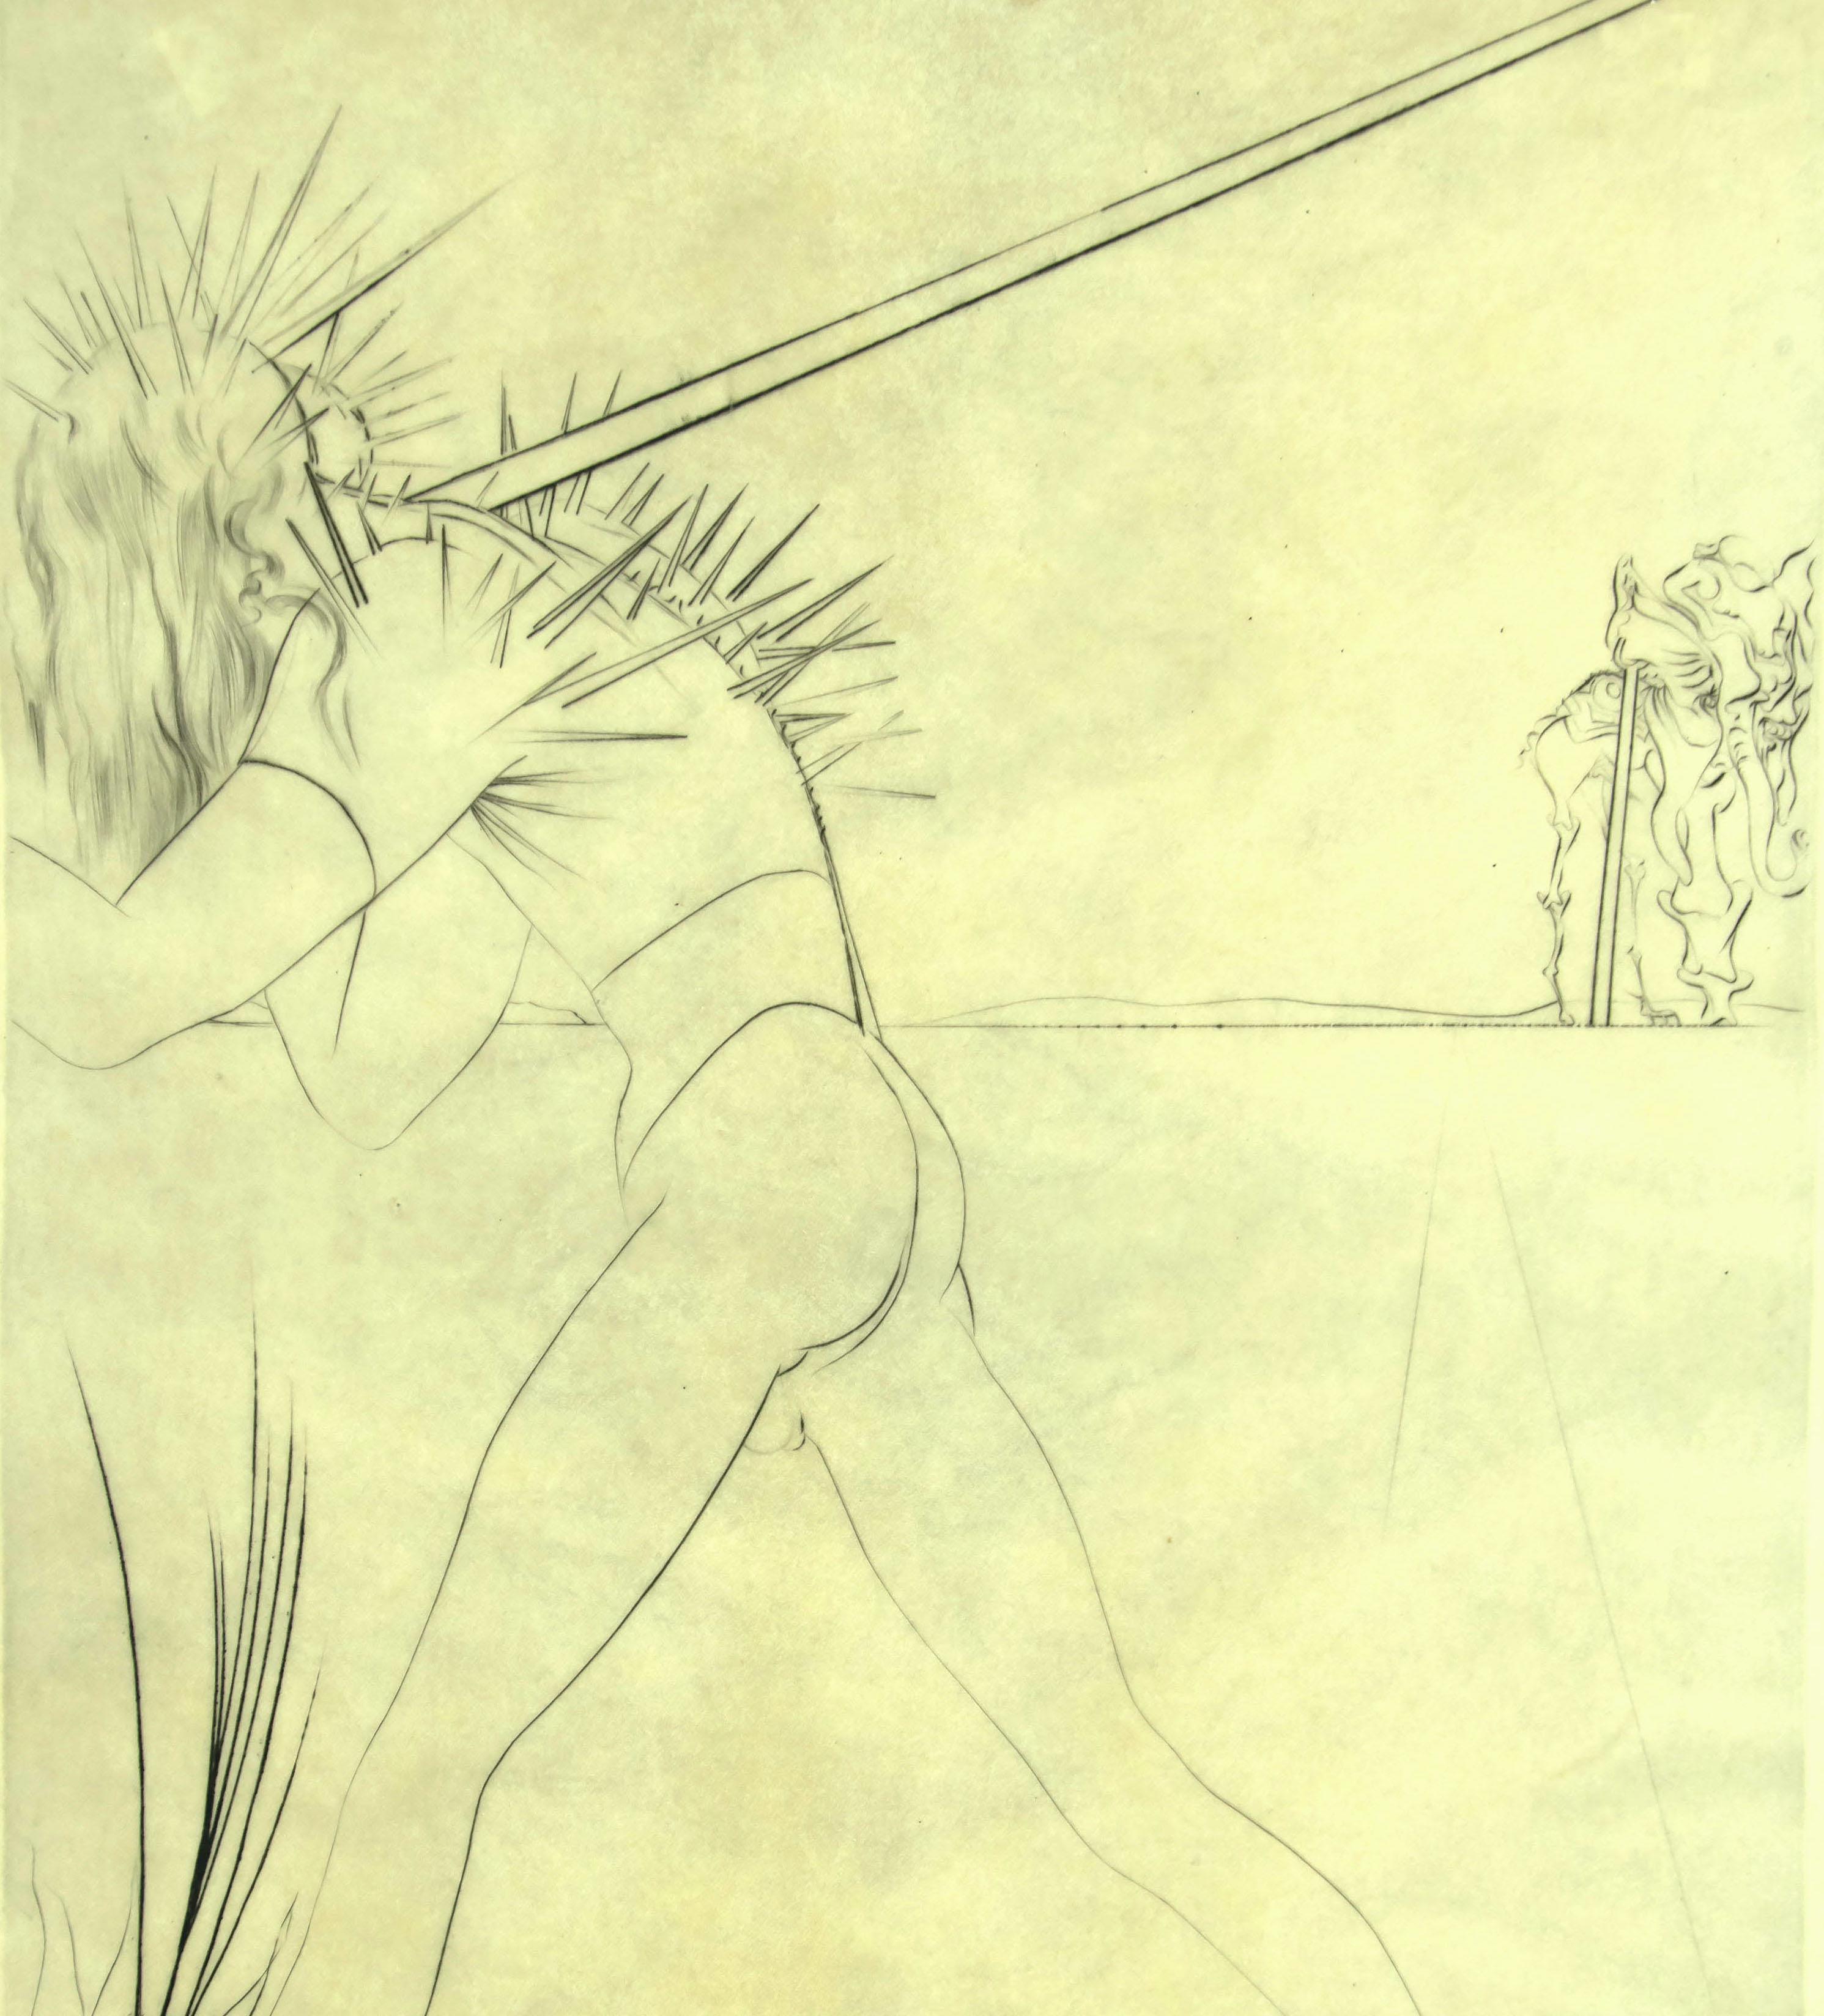 Il y a Des Soldats - Radierung nach S. Dalì - 1973 (Surrealismus), Print, von Salvador Dalí